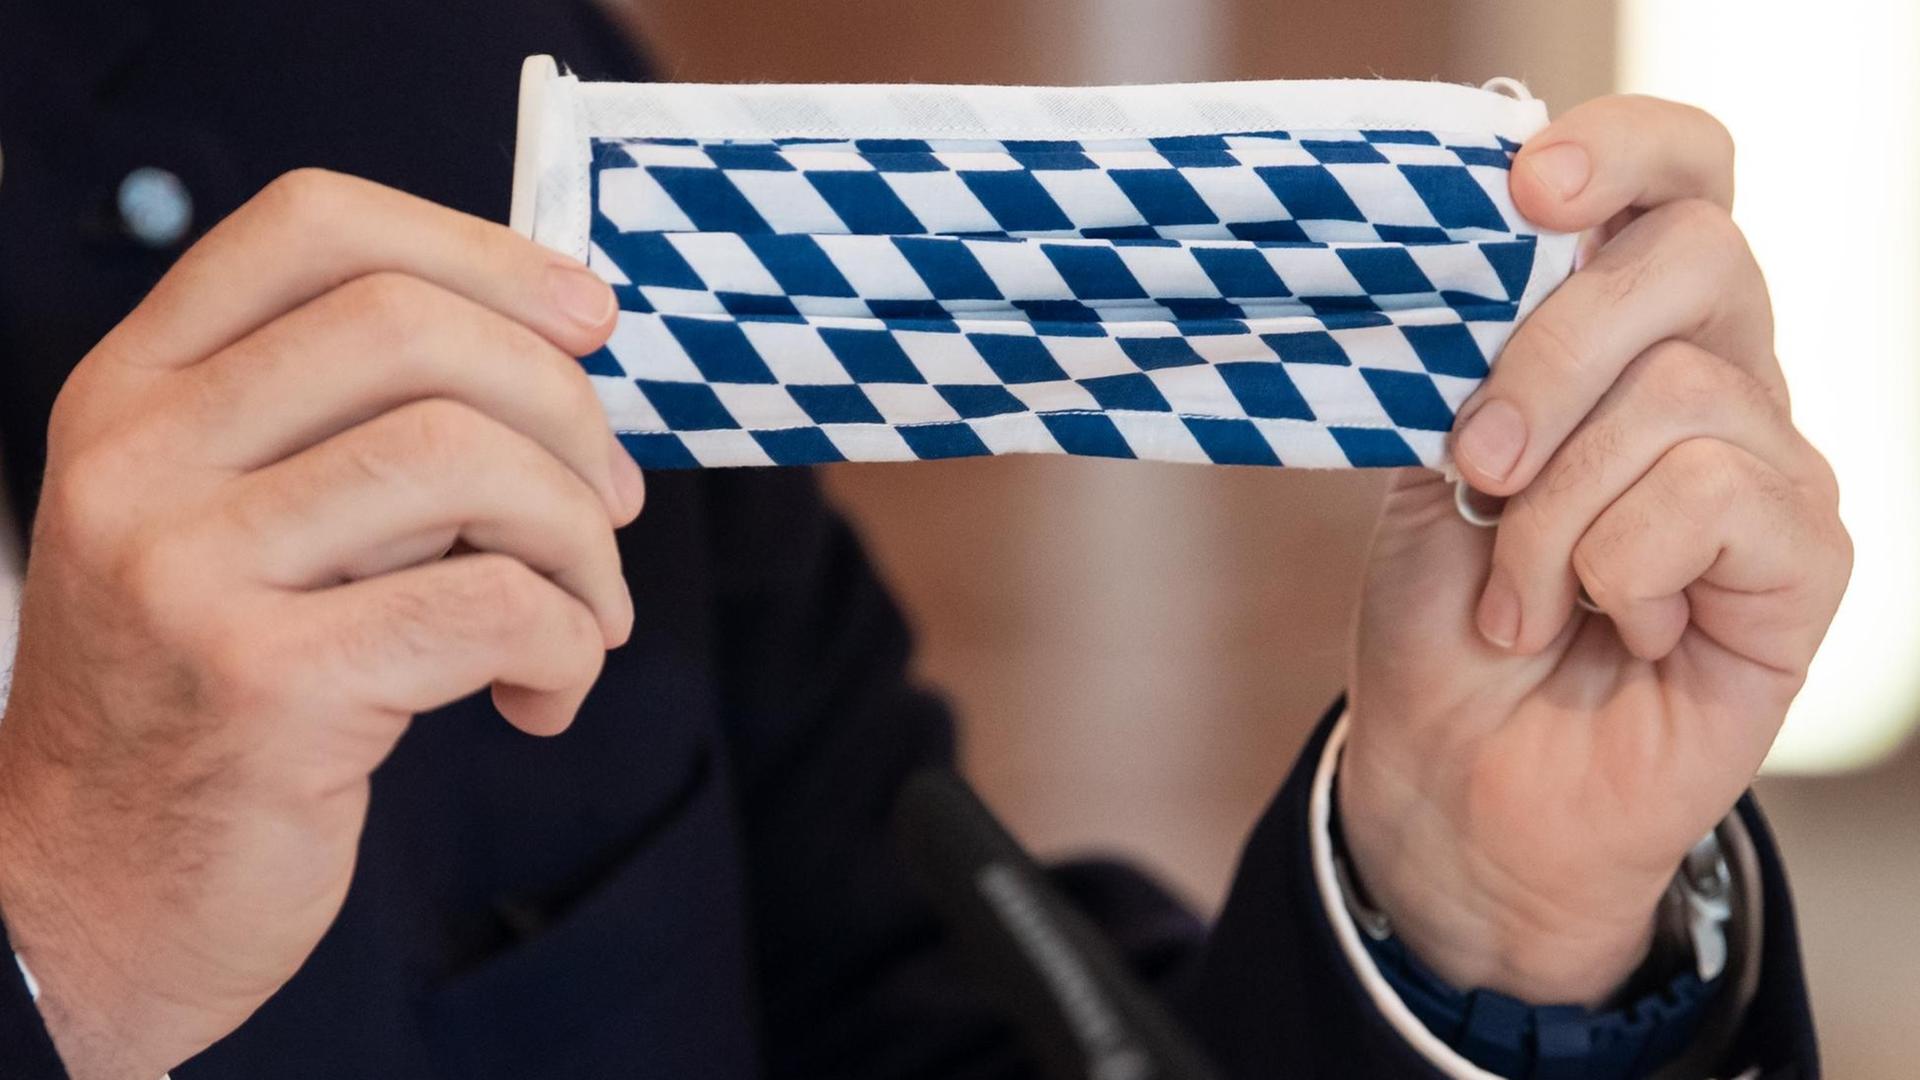 Markus Söder (CSU), Ministerpräsident von Bayern, nimmt an einer Sitzung des bayerischen Kabinetts teil und hält dabei einen Mundschutz mit der bayerischen Rautenflagge in den Händen.